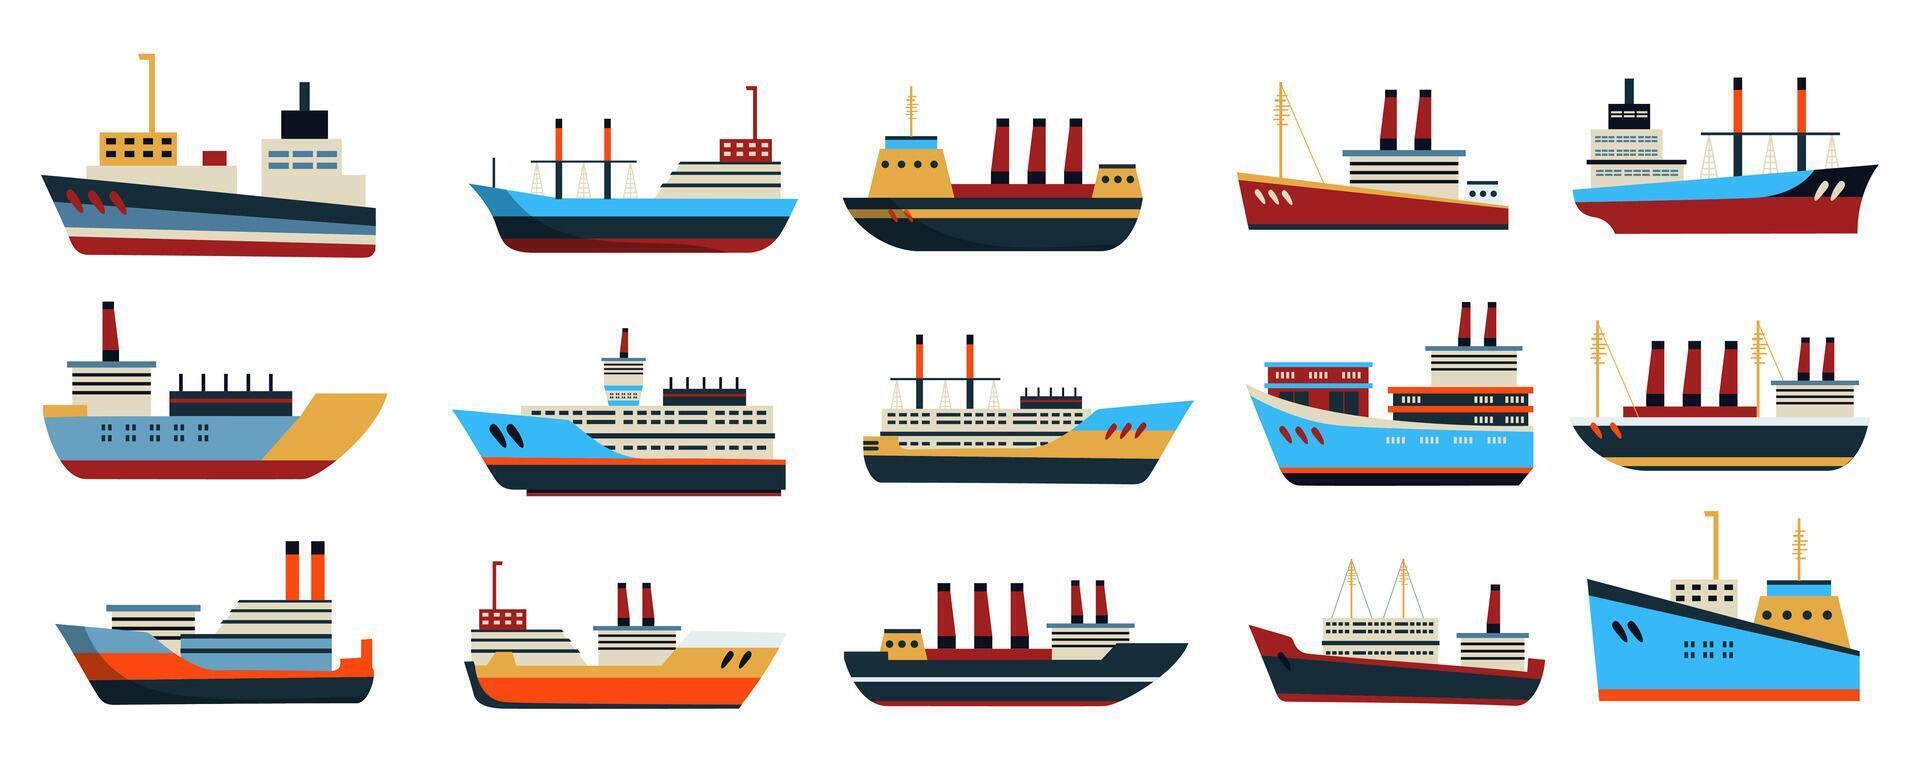 hav fartyg och båtar mega uppsättning i platt design. bunt element av vatten transport fordon, annorlunda typer av segelbåtar, yachter, foder i sida se. vektor illustration isolerat grafisk objekt